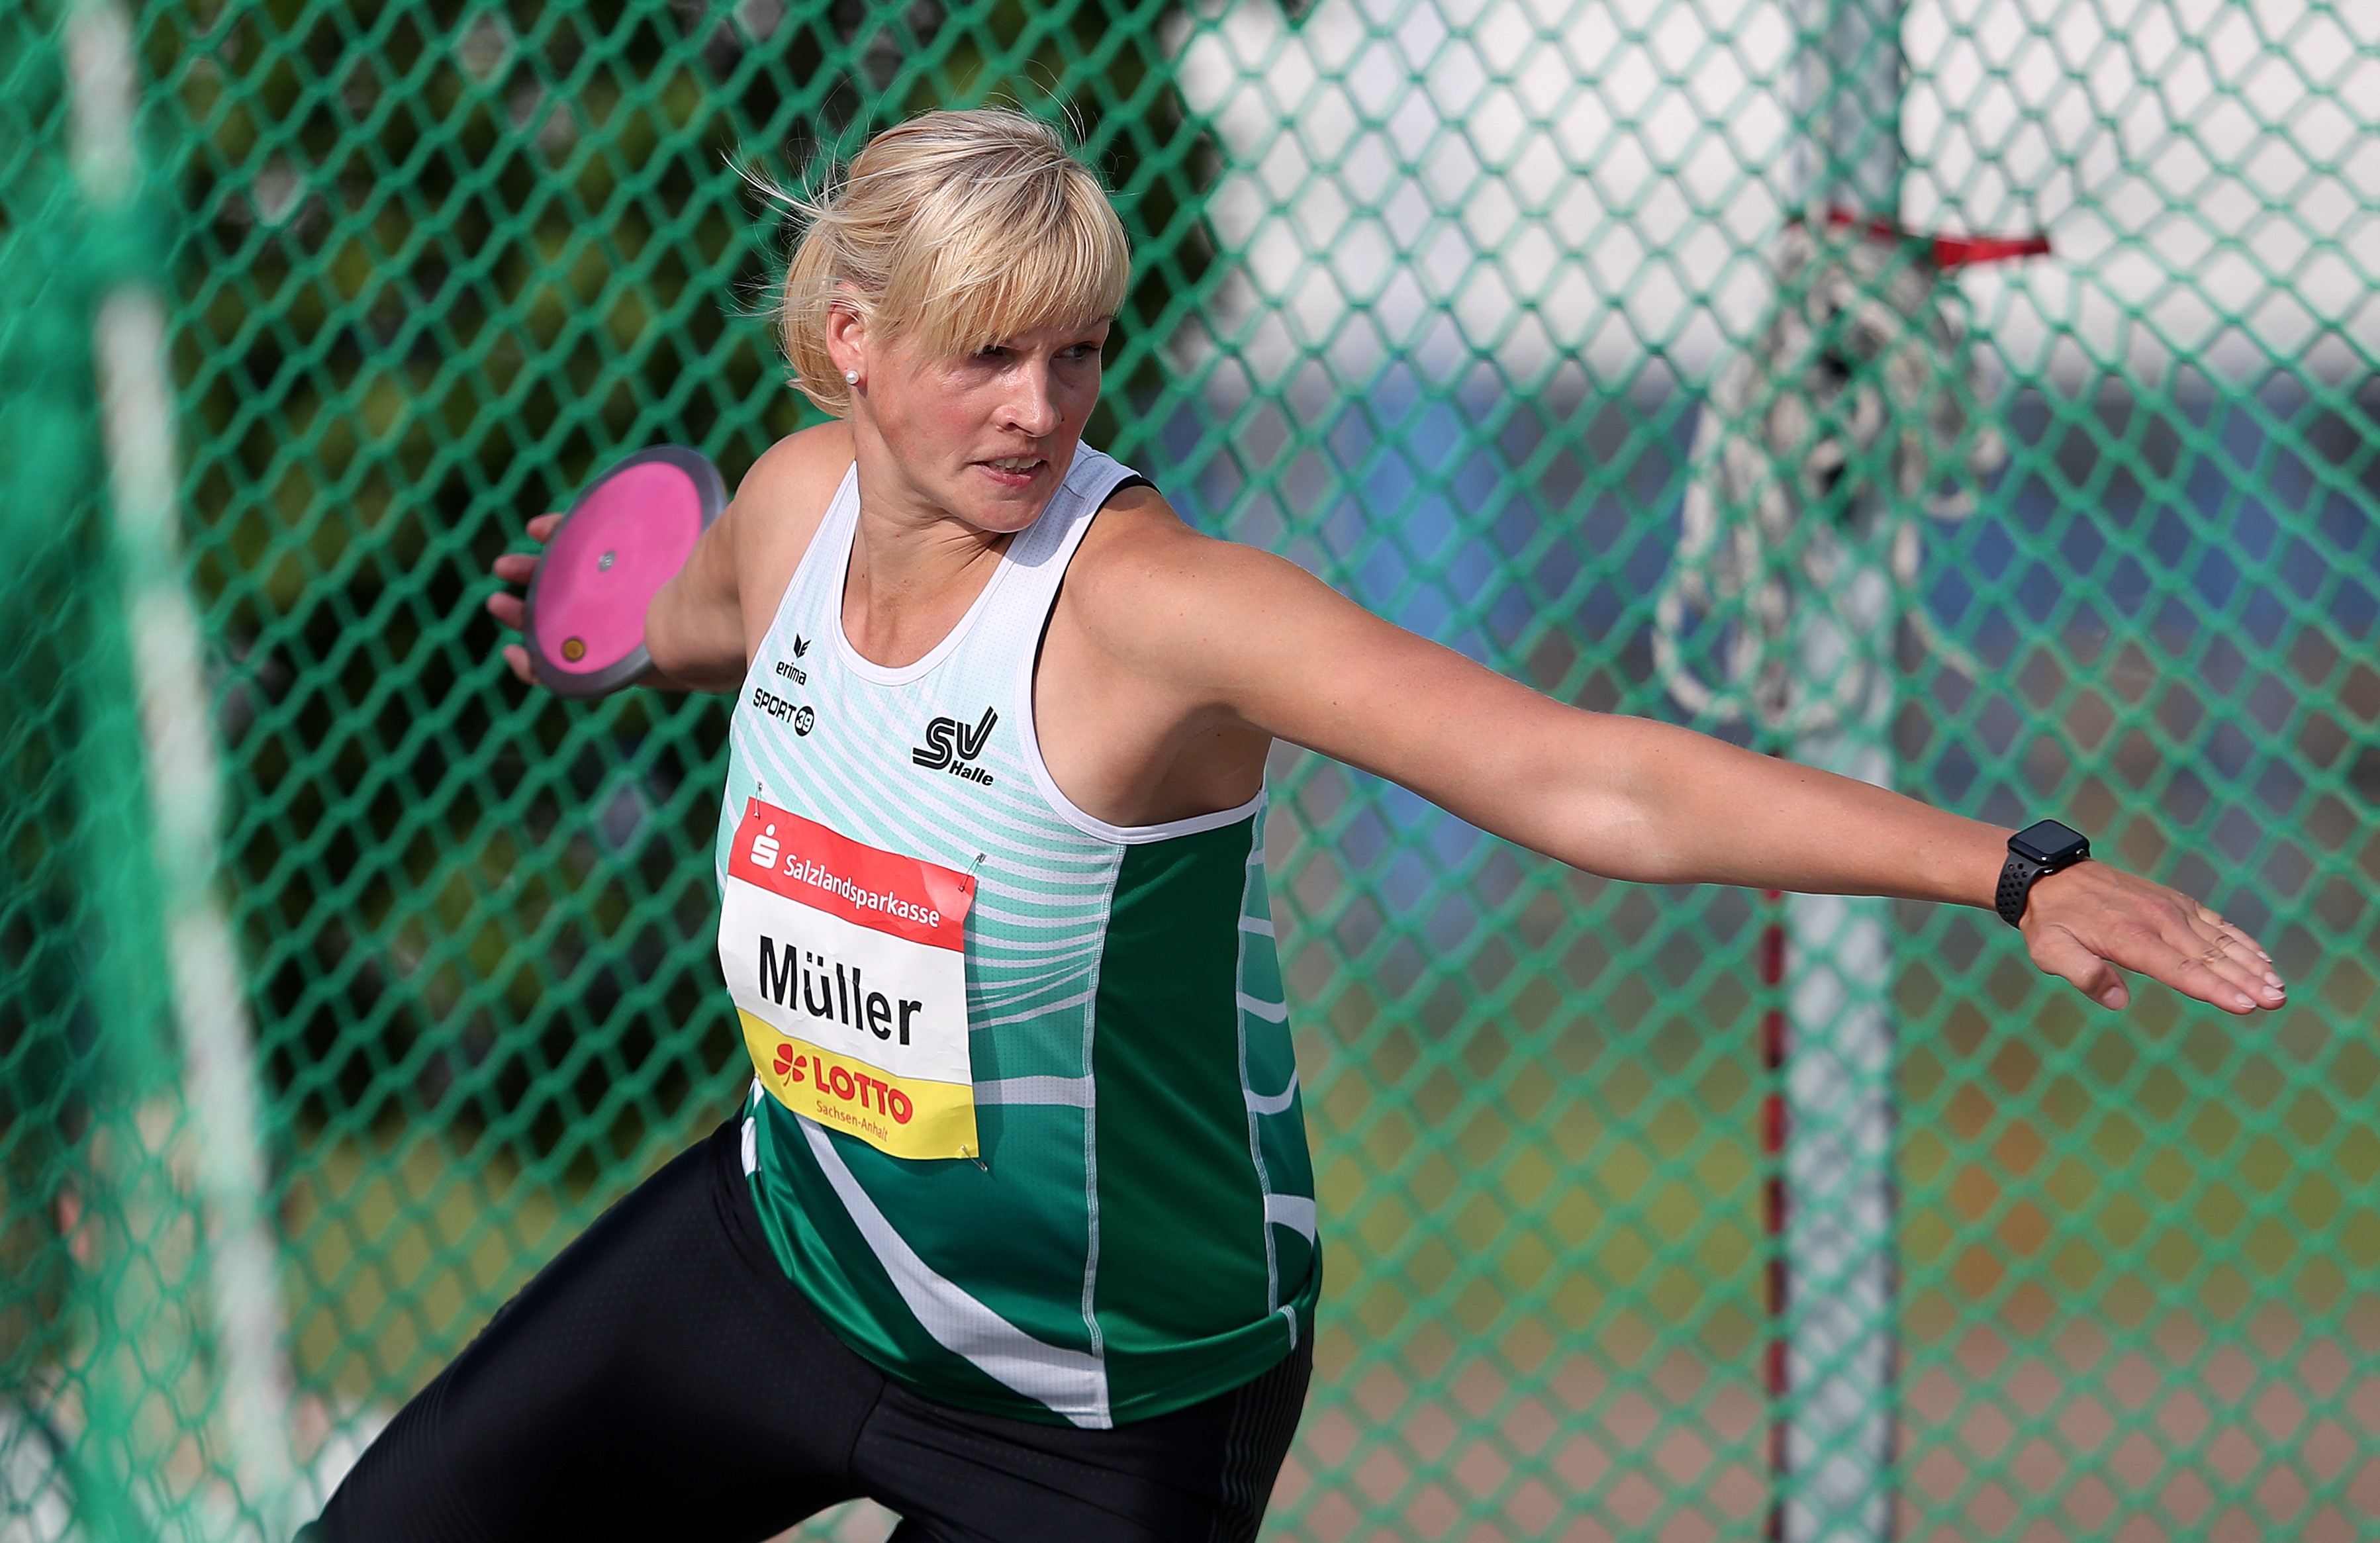 Nadine Müller sicherte sich den Sieg beim Solecup mit einer Weite von 64,17m. (Foto: dpa)